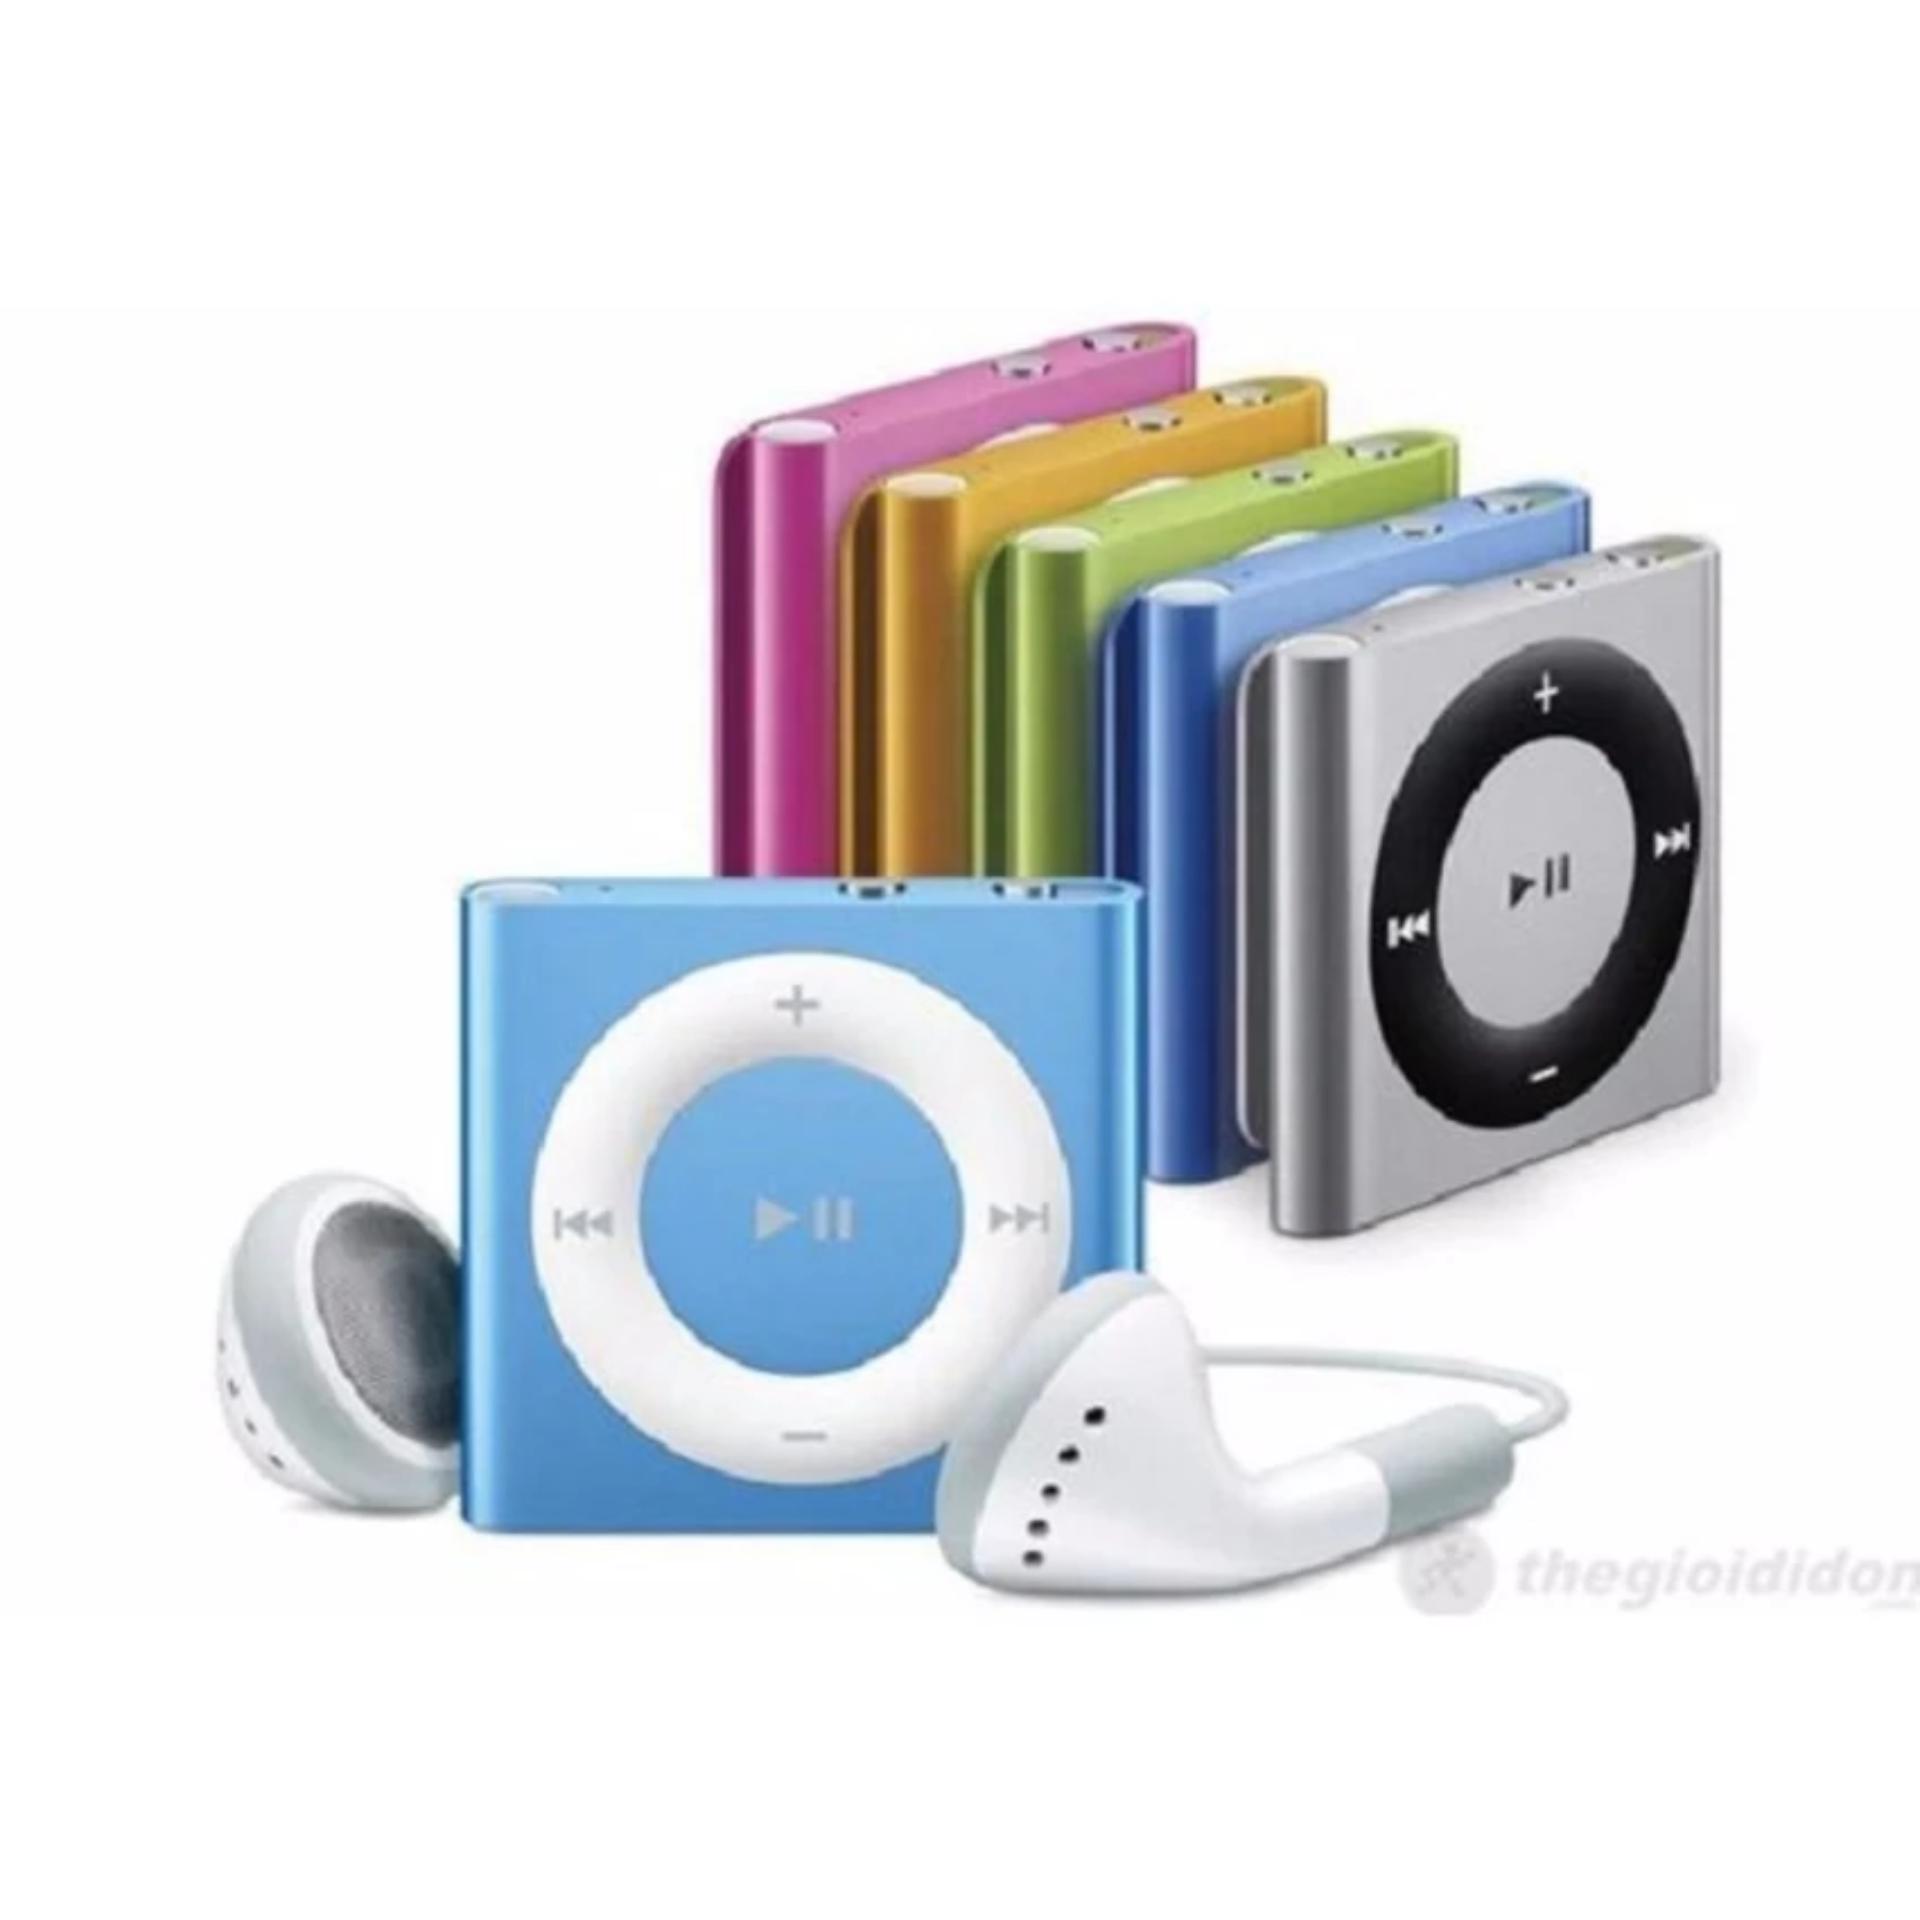 Bộ 1 máy nghe nhạc MP3 mini vỏ nhôm ,kẹp áo(màu ngẫu nhiên) và 1 Tai nghe